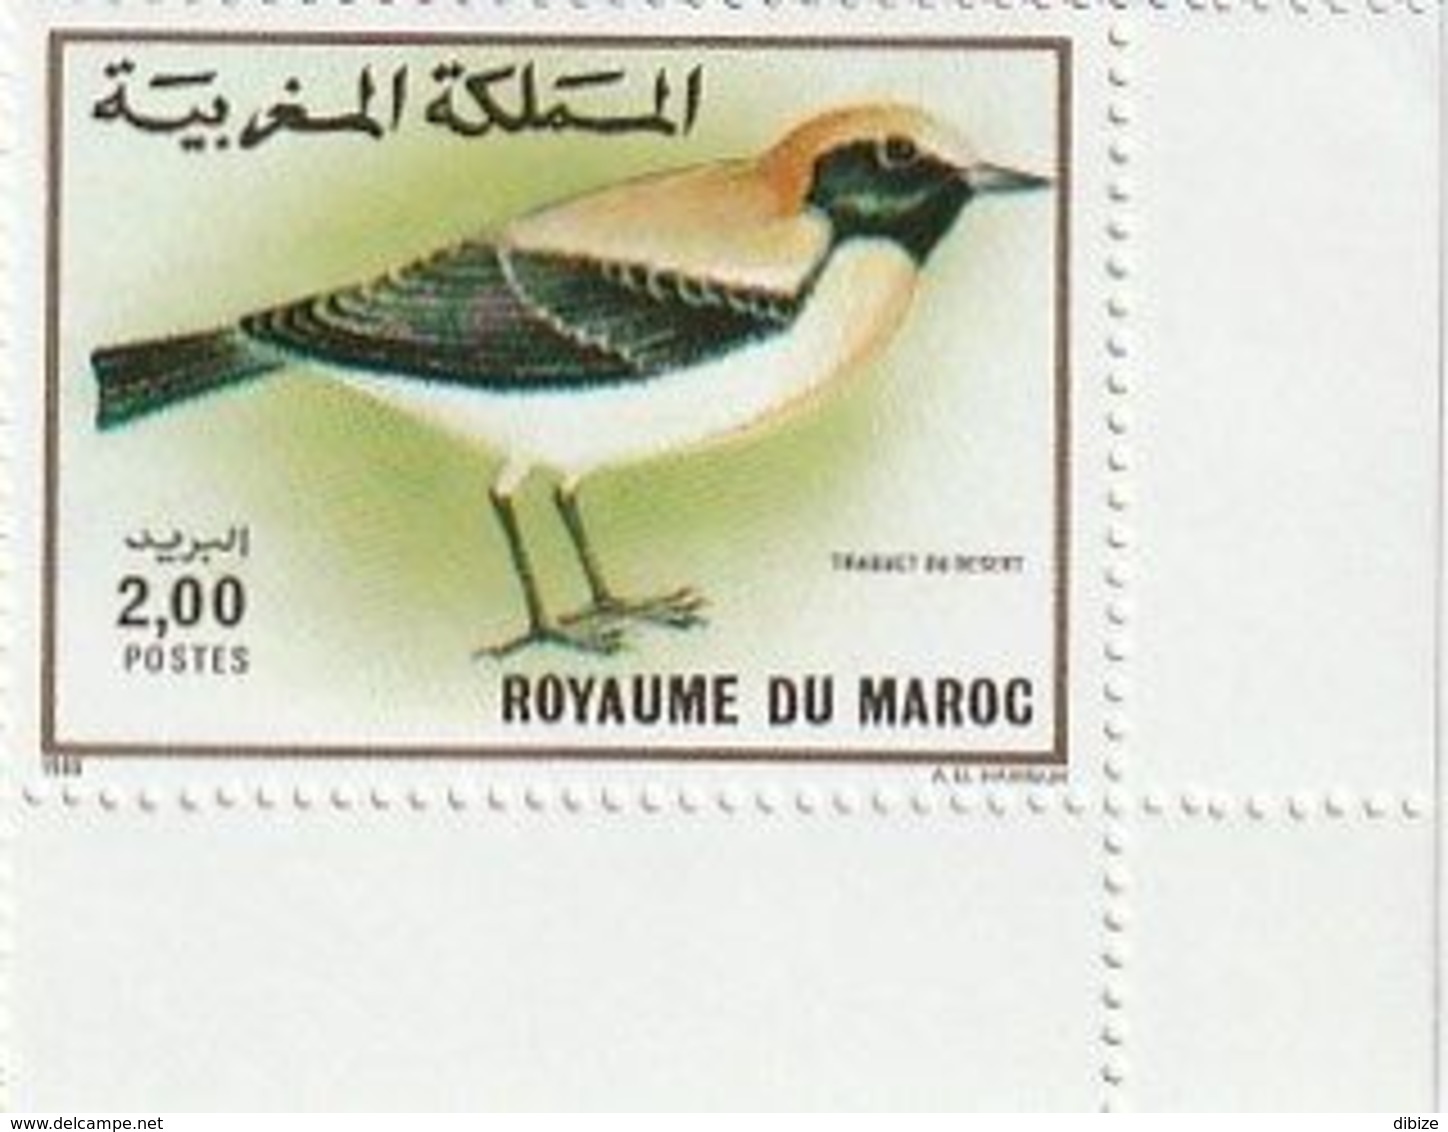 Maroc. 2 Coins D'1 Timbre Chacun Yvert Et Tellier N° 1073-1074 De 1989. Oiseaux. Traquet Du Désert. Alouette Hausse-col - Songbirds & Tree Dwellers